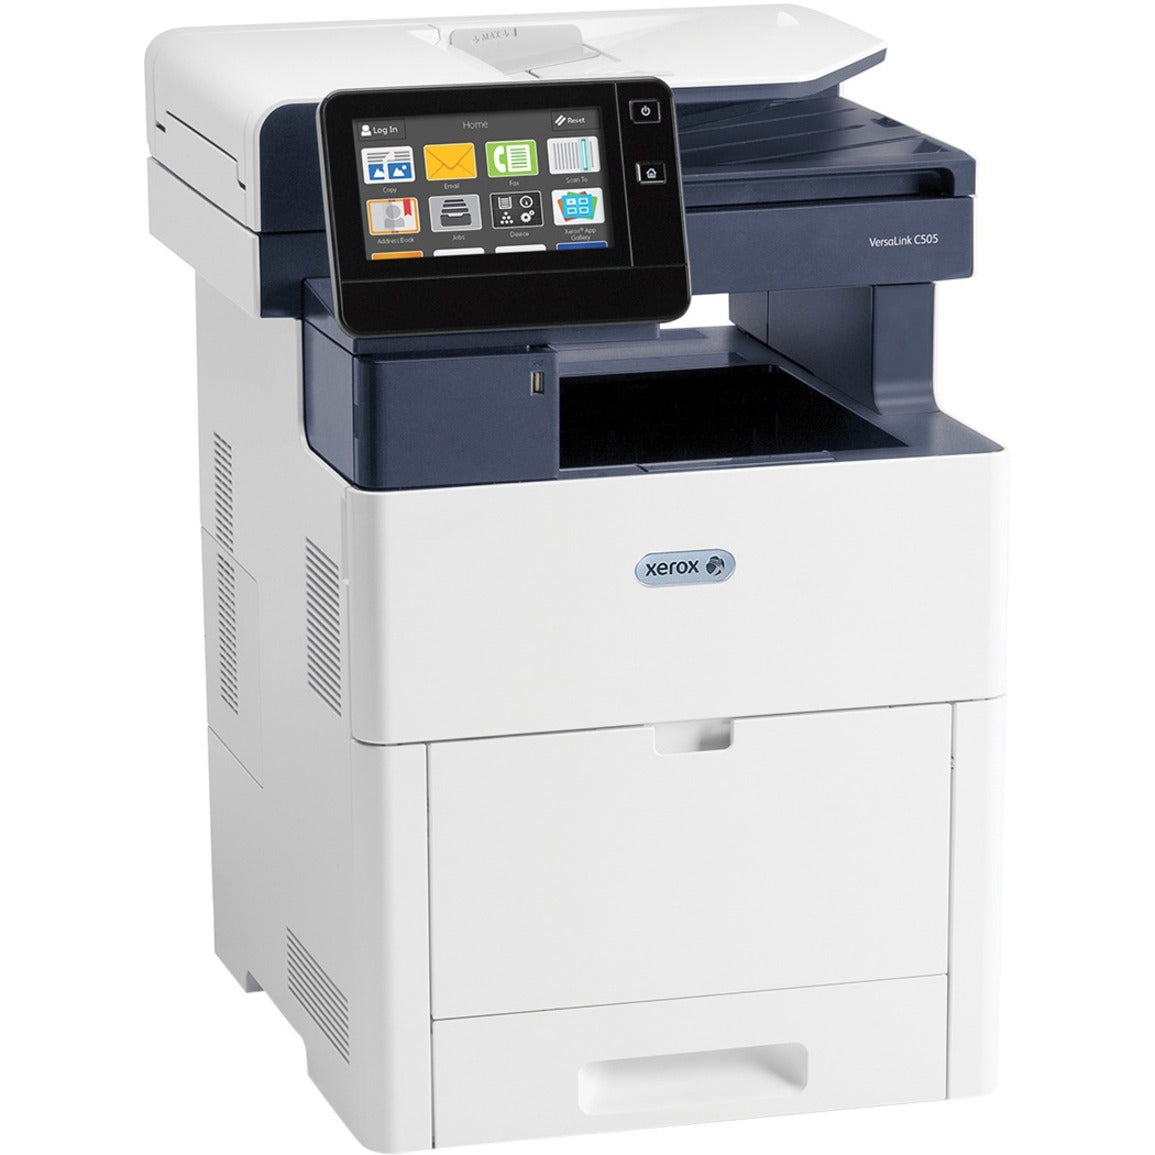 Xerox C505/S VersaLink C505 Color Multifunction Printer, LED Multifunction Printer, 45 ppm, 1200 x 2400 dpi